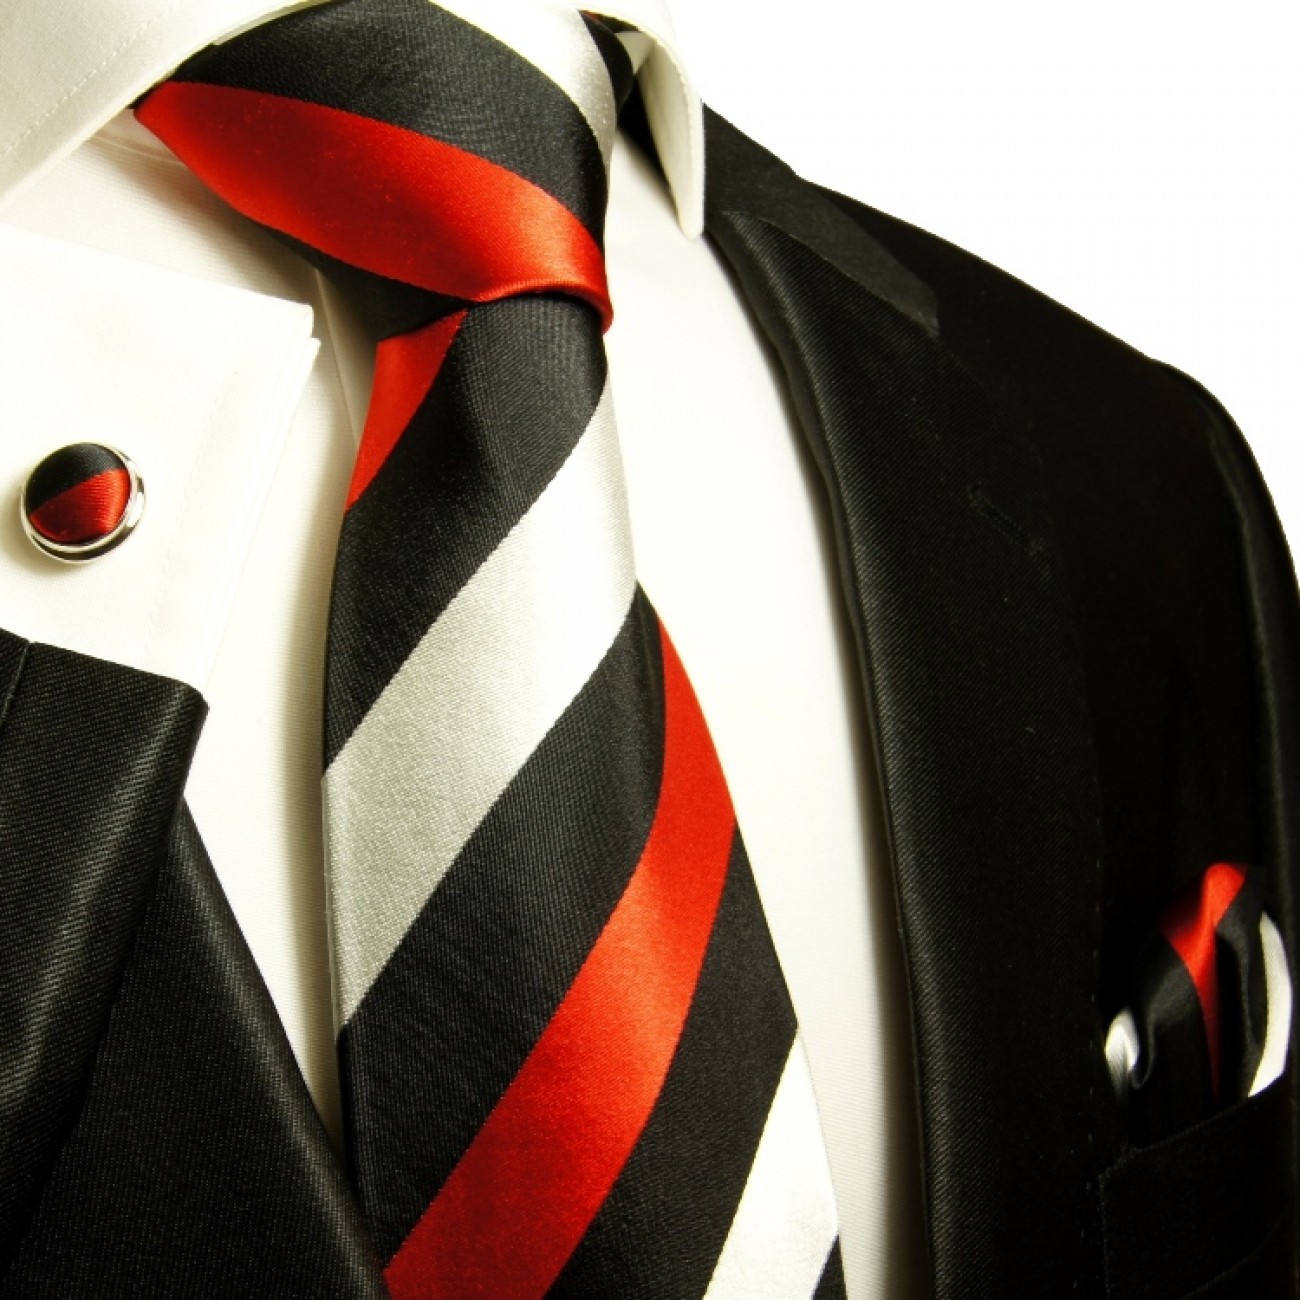 Krawatte silber rot schwarz gestreift Seidenkrawatte - Seide - Krawatte mit Einstecktuch und Manschettenknöpfe